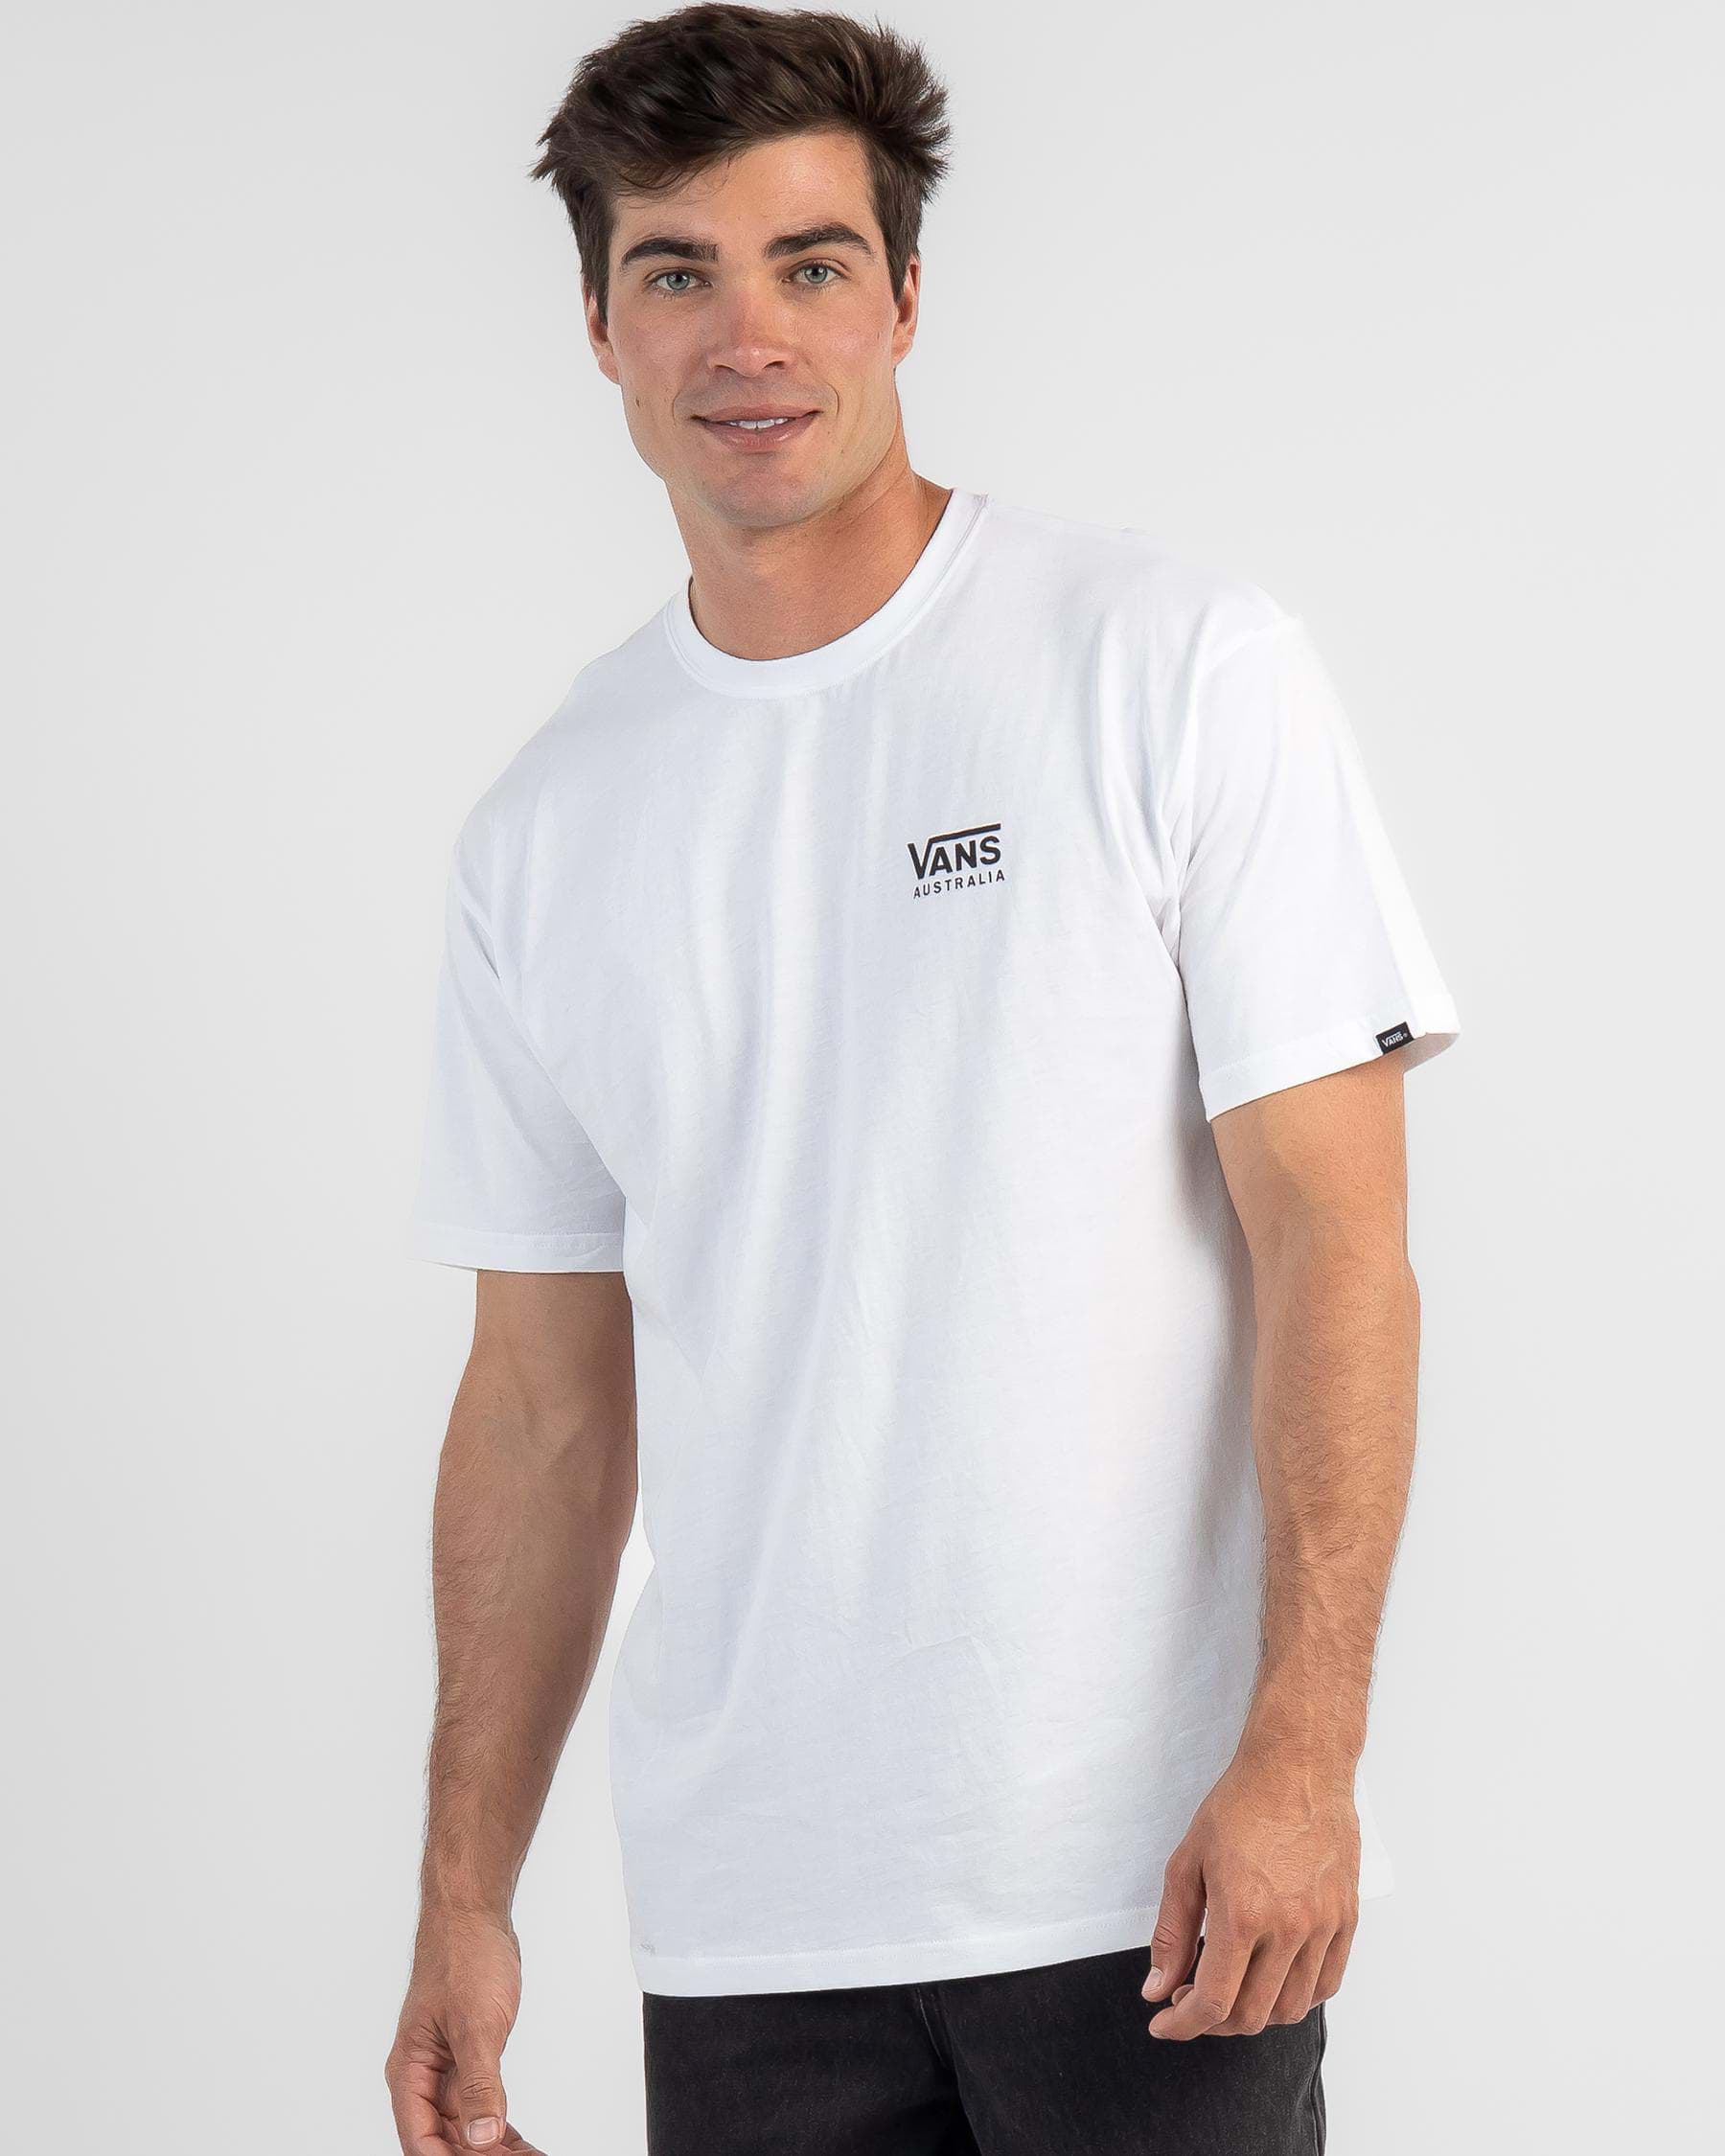 Vans Australia T-Shirt In White - Fast Shipping & Easy Returns - City ...